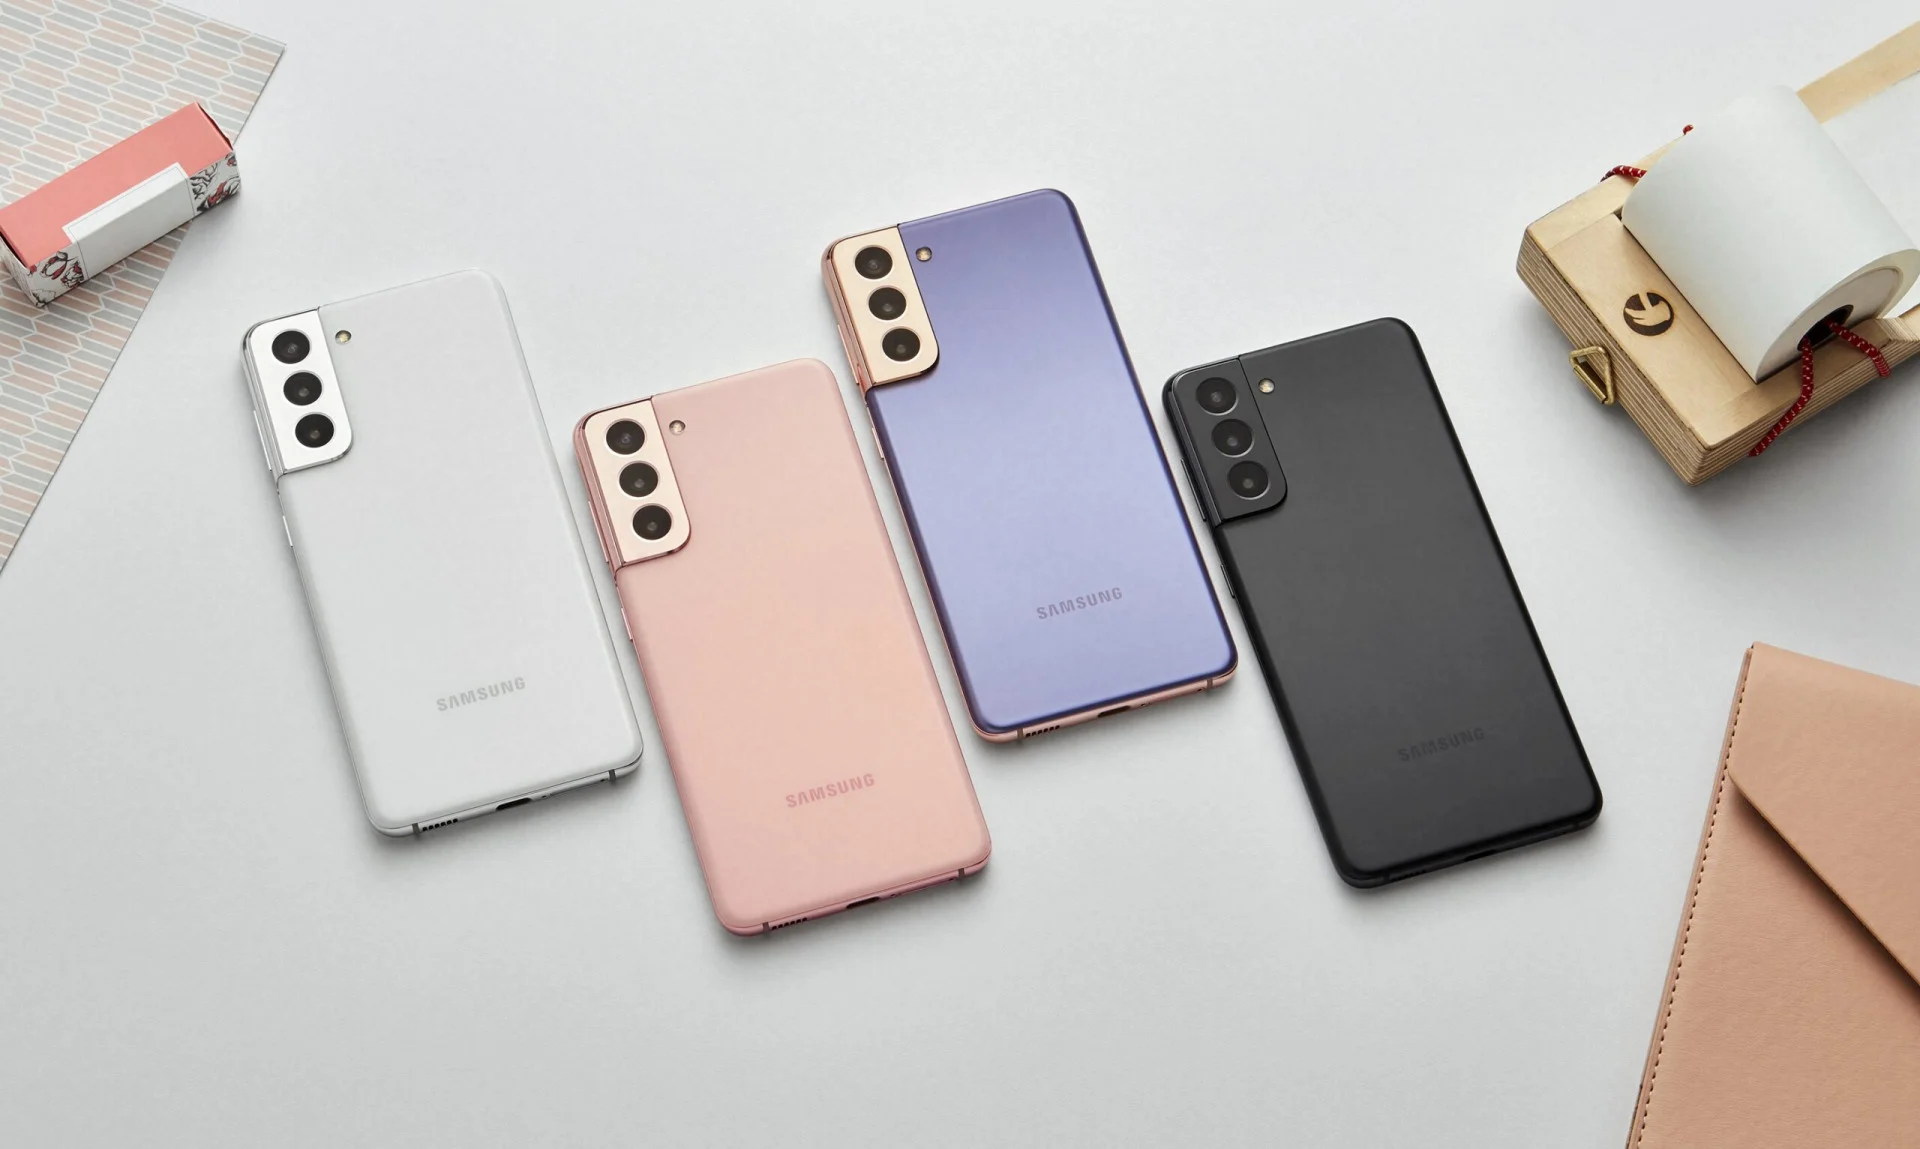 Samsung представила линейку смартфонов Galaxy S21 — цены начинаются от 75 тысяч рублей - фото 1